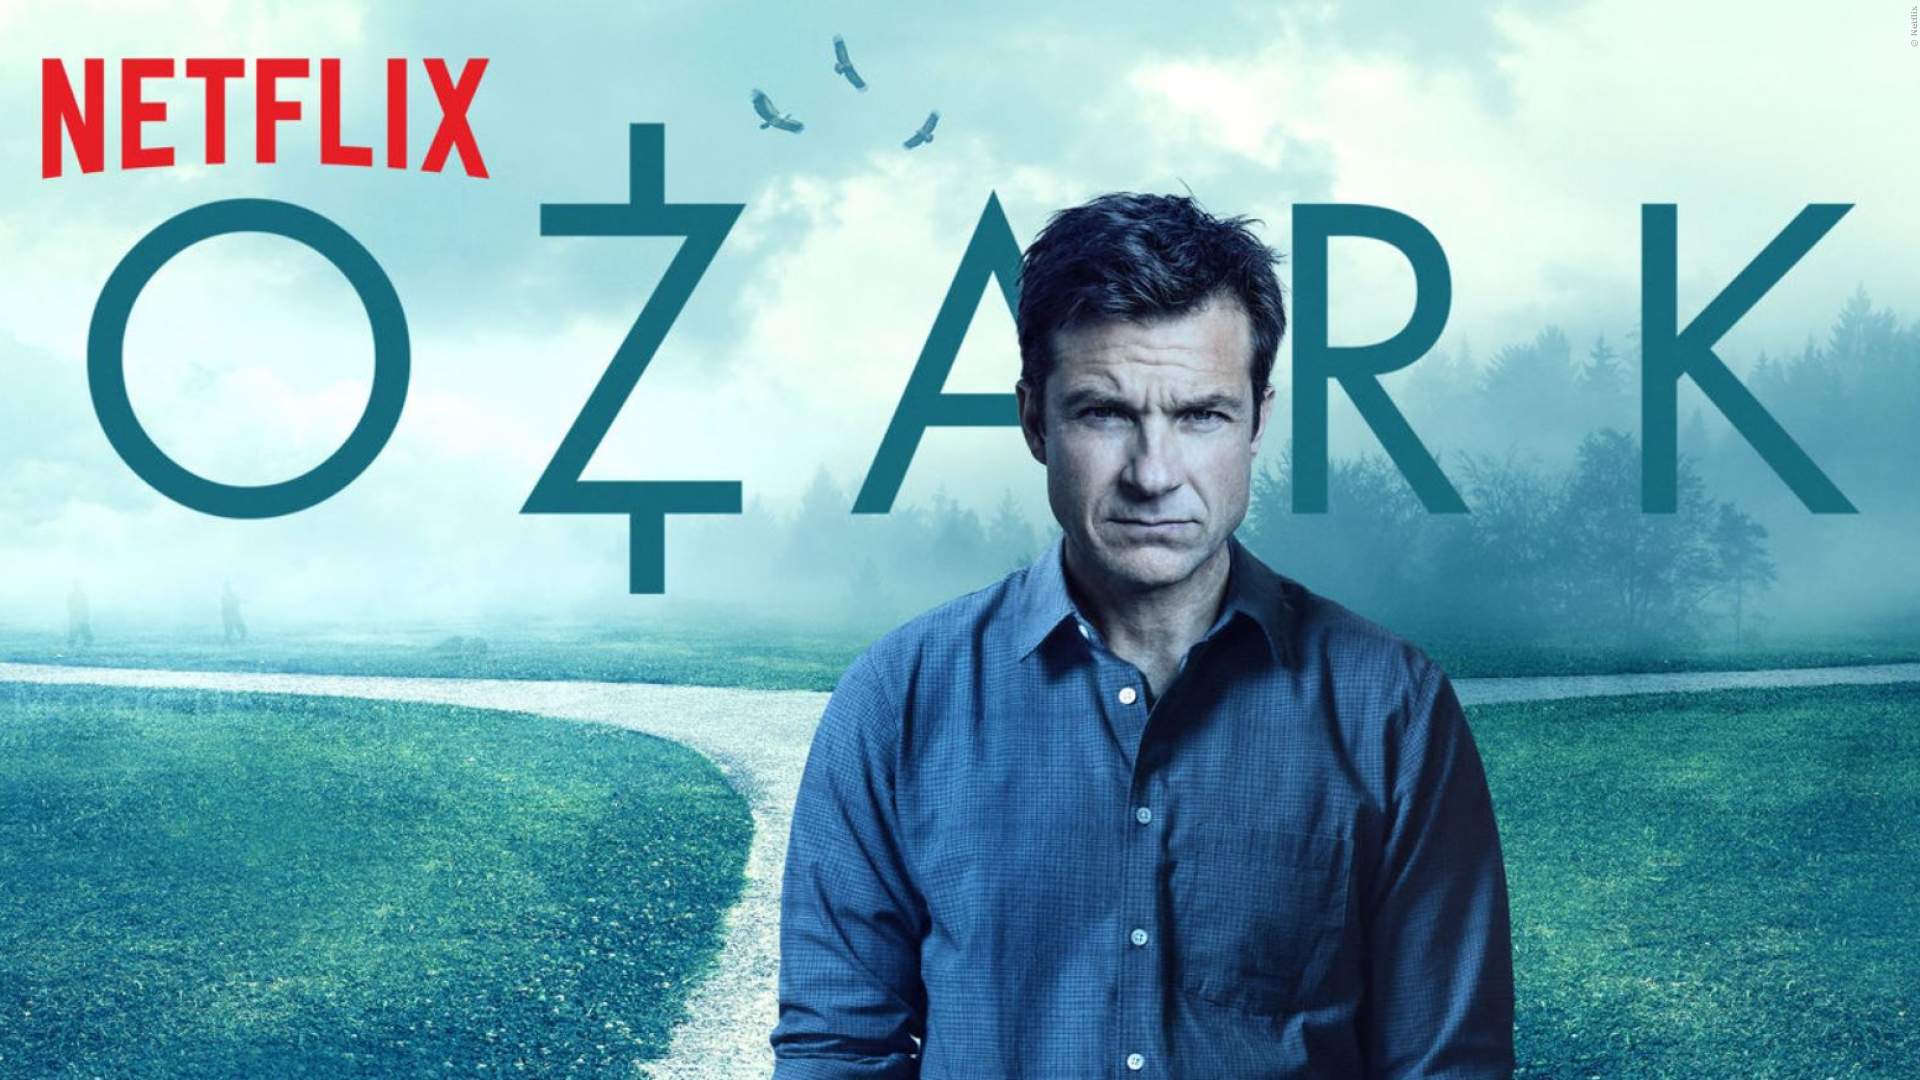 Ozark season 3 release date announced by Netflix